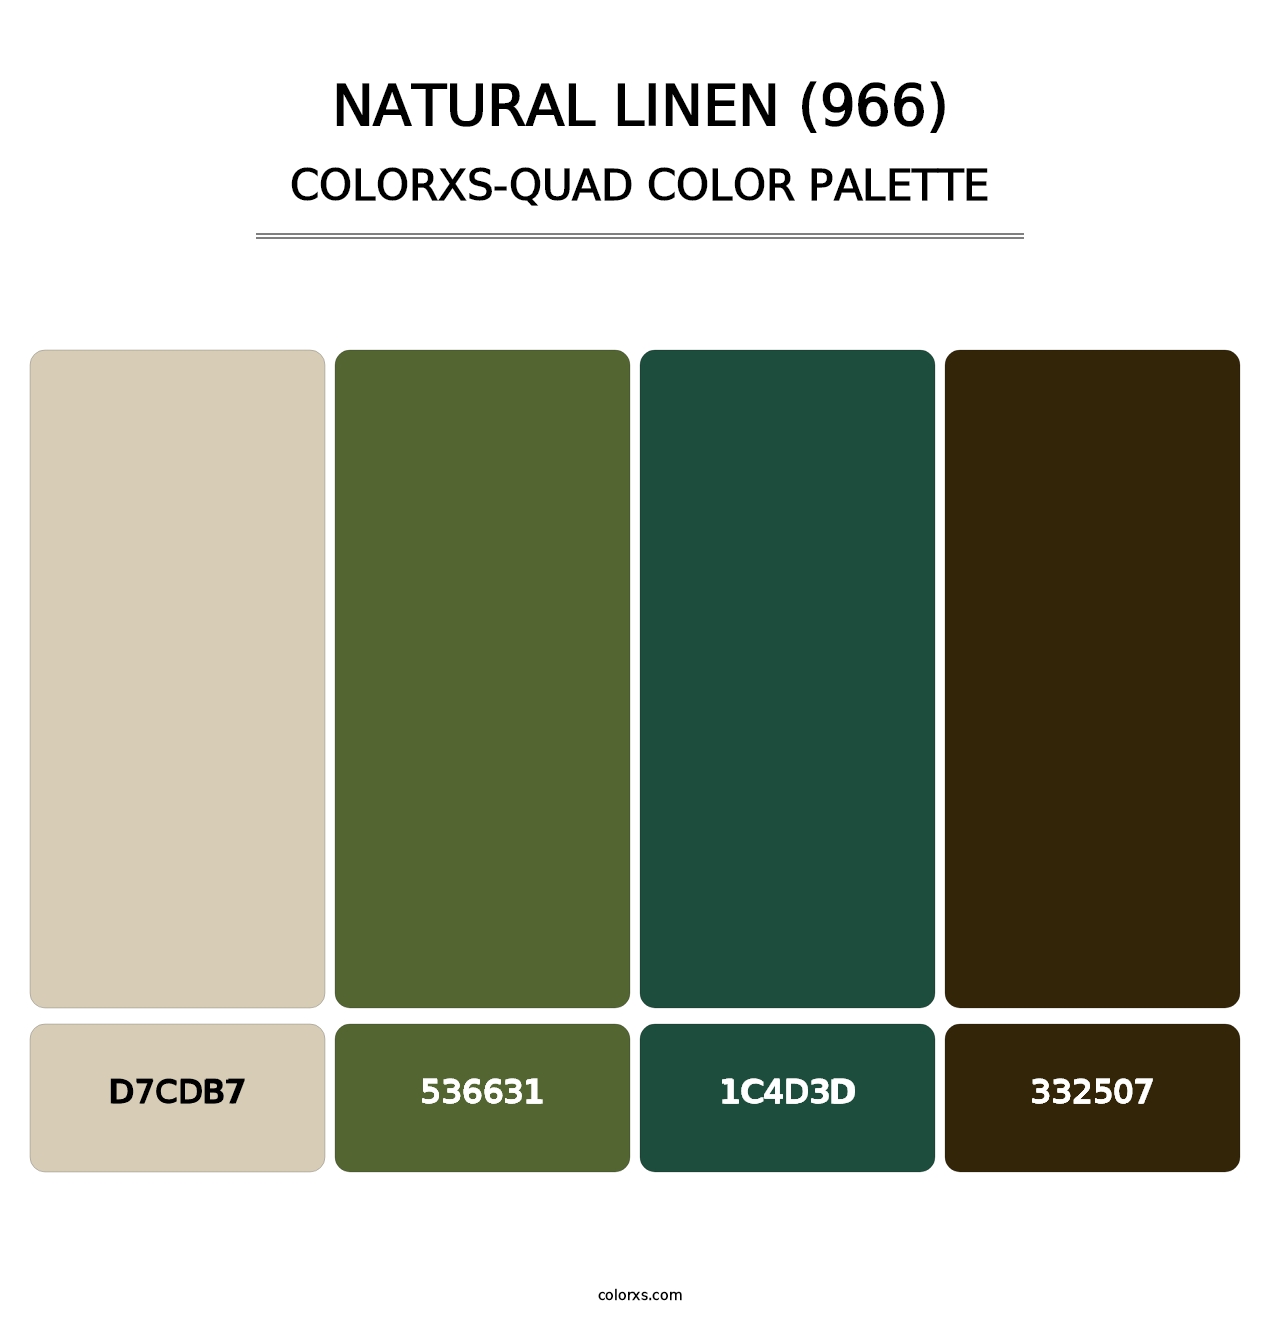 Natural Linen (966) - Colorxs Quad Palette